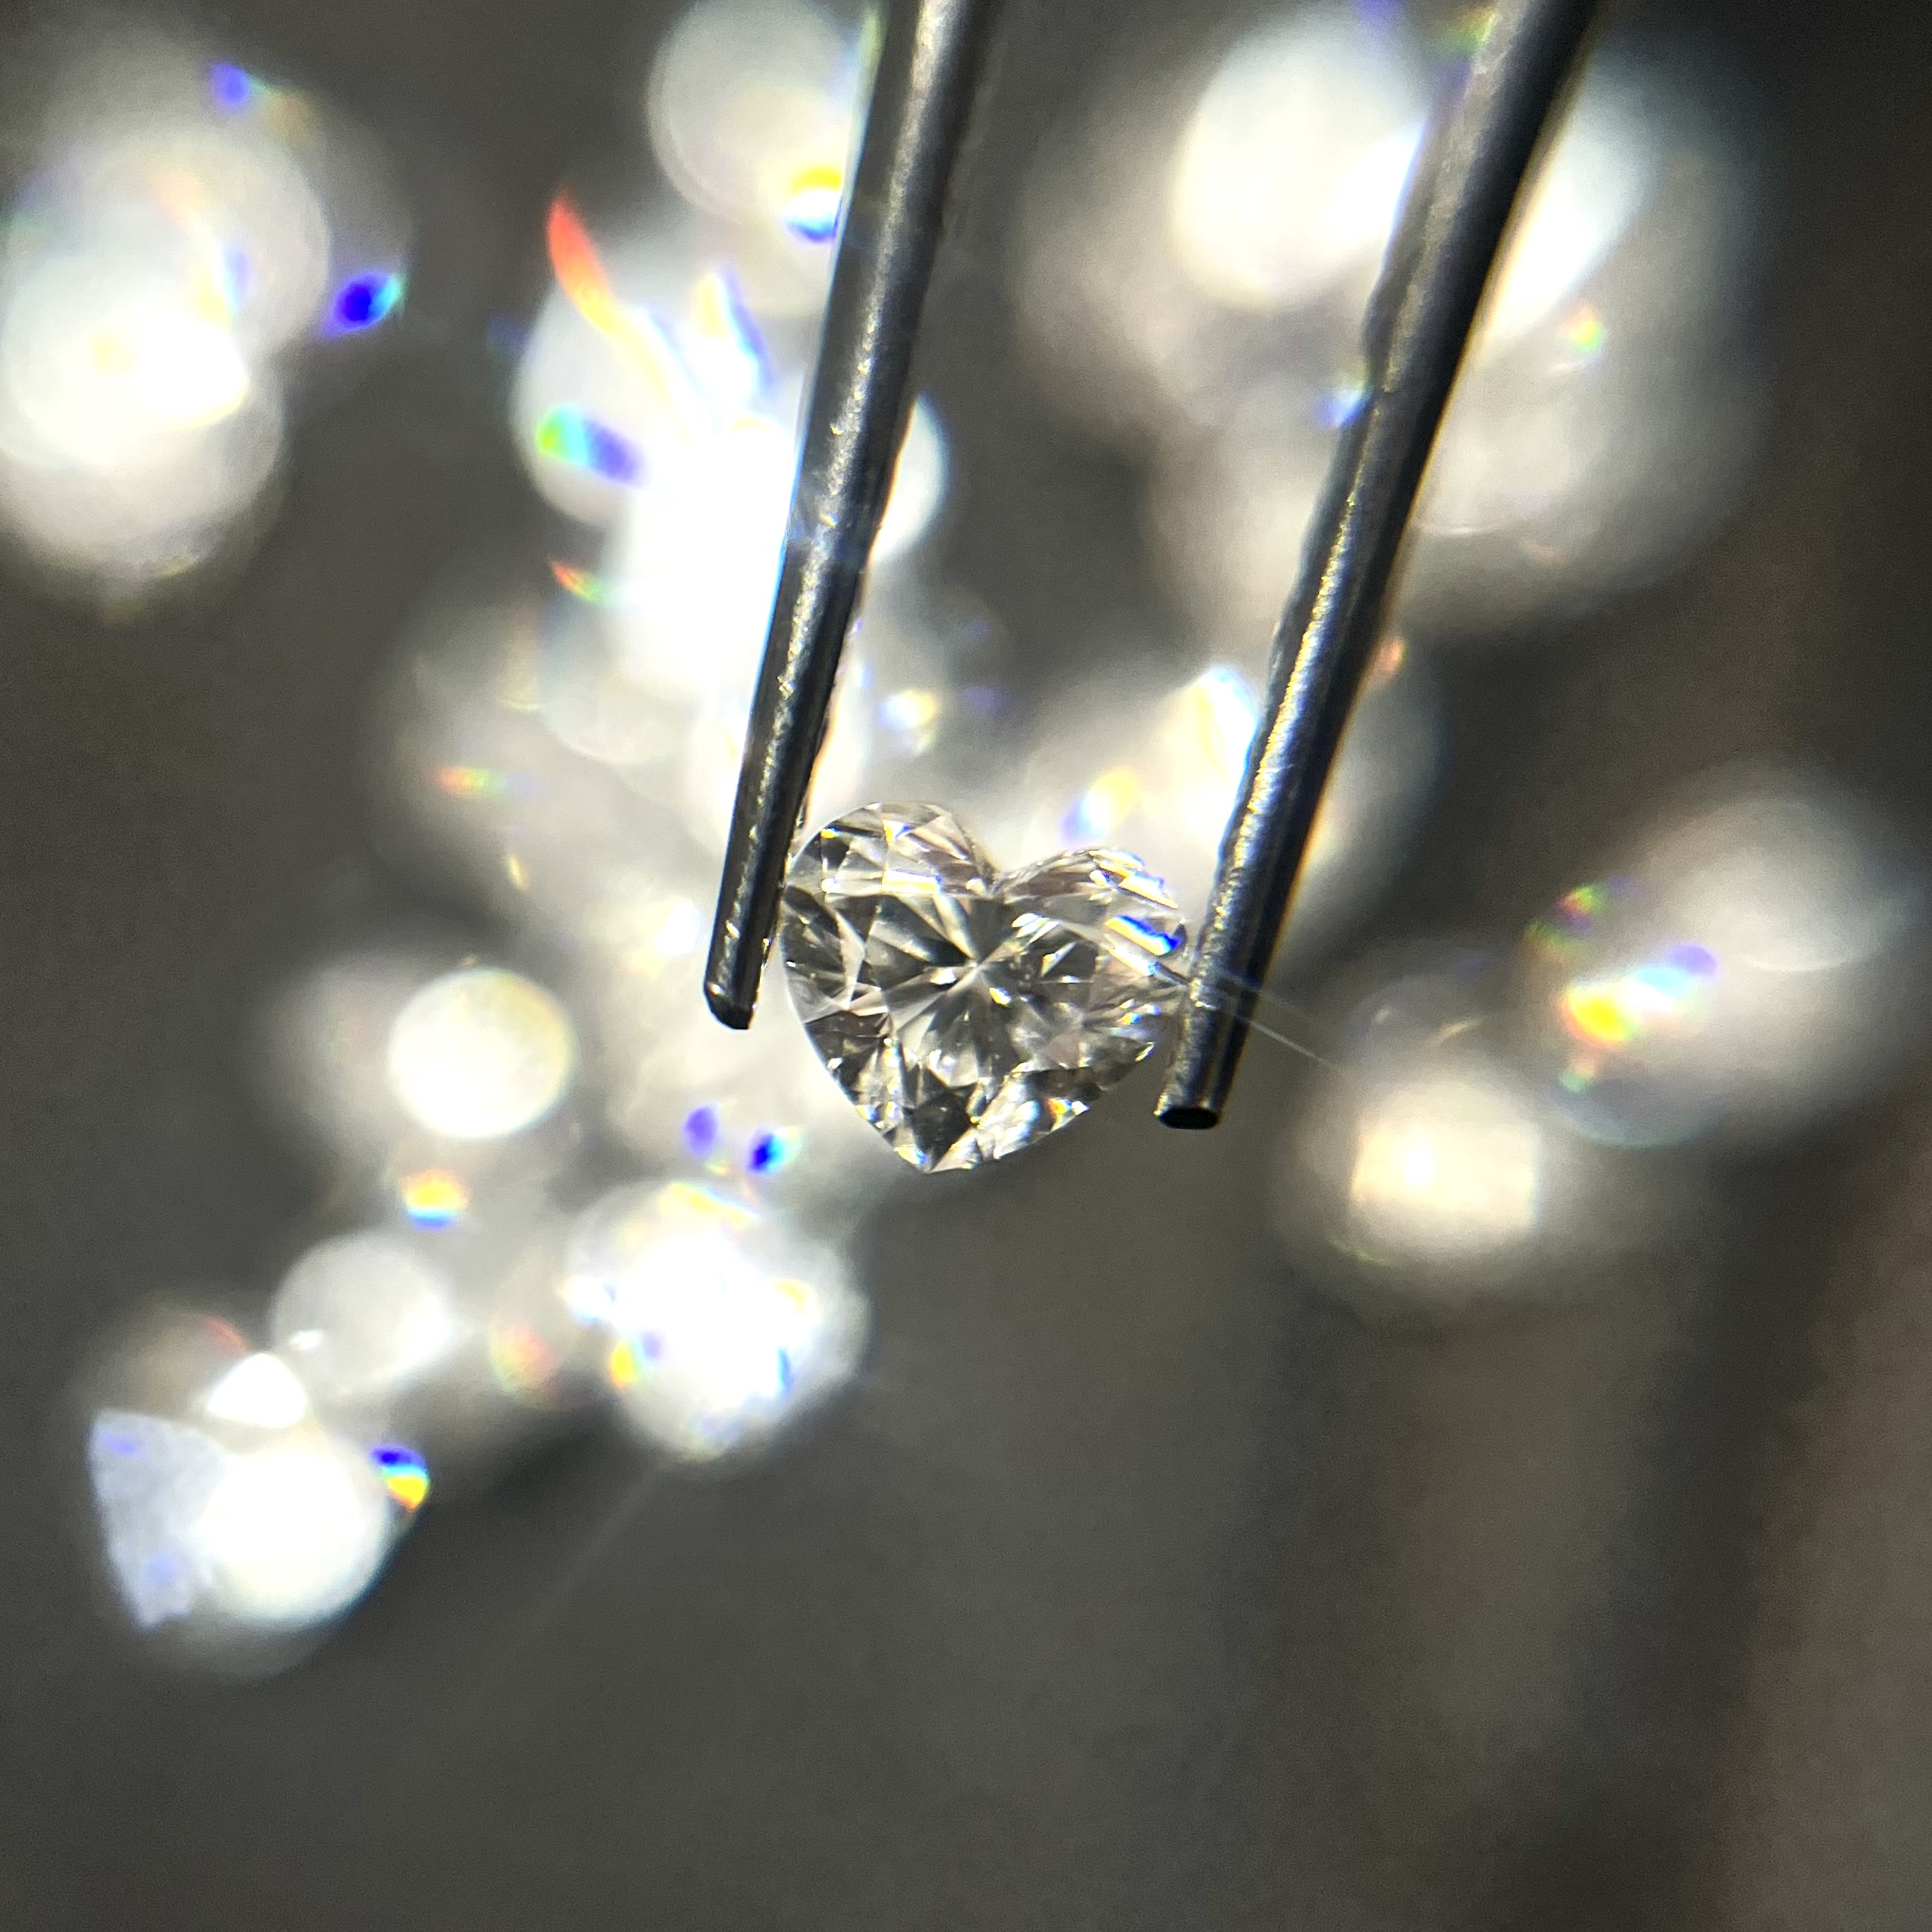 Diamant synthétique brillant en gros plan